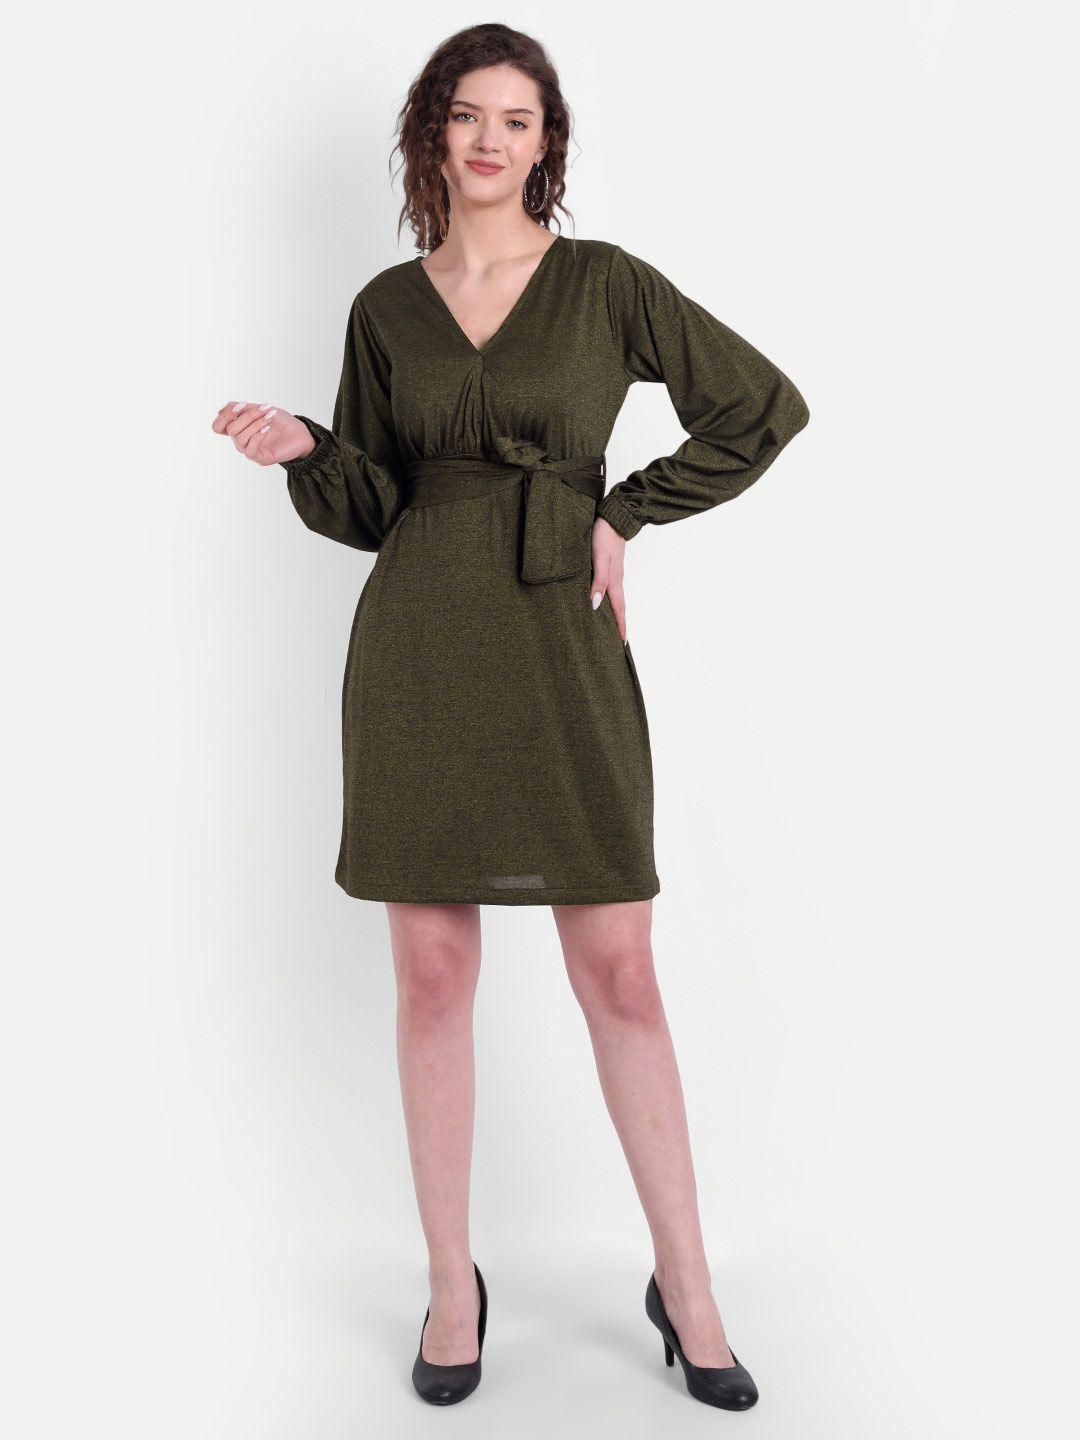 broadstar olive green solid a-line mini dress